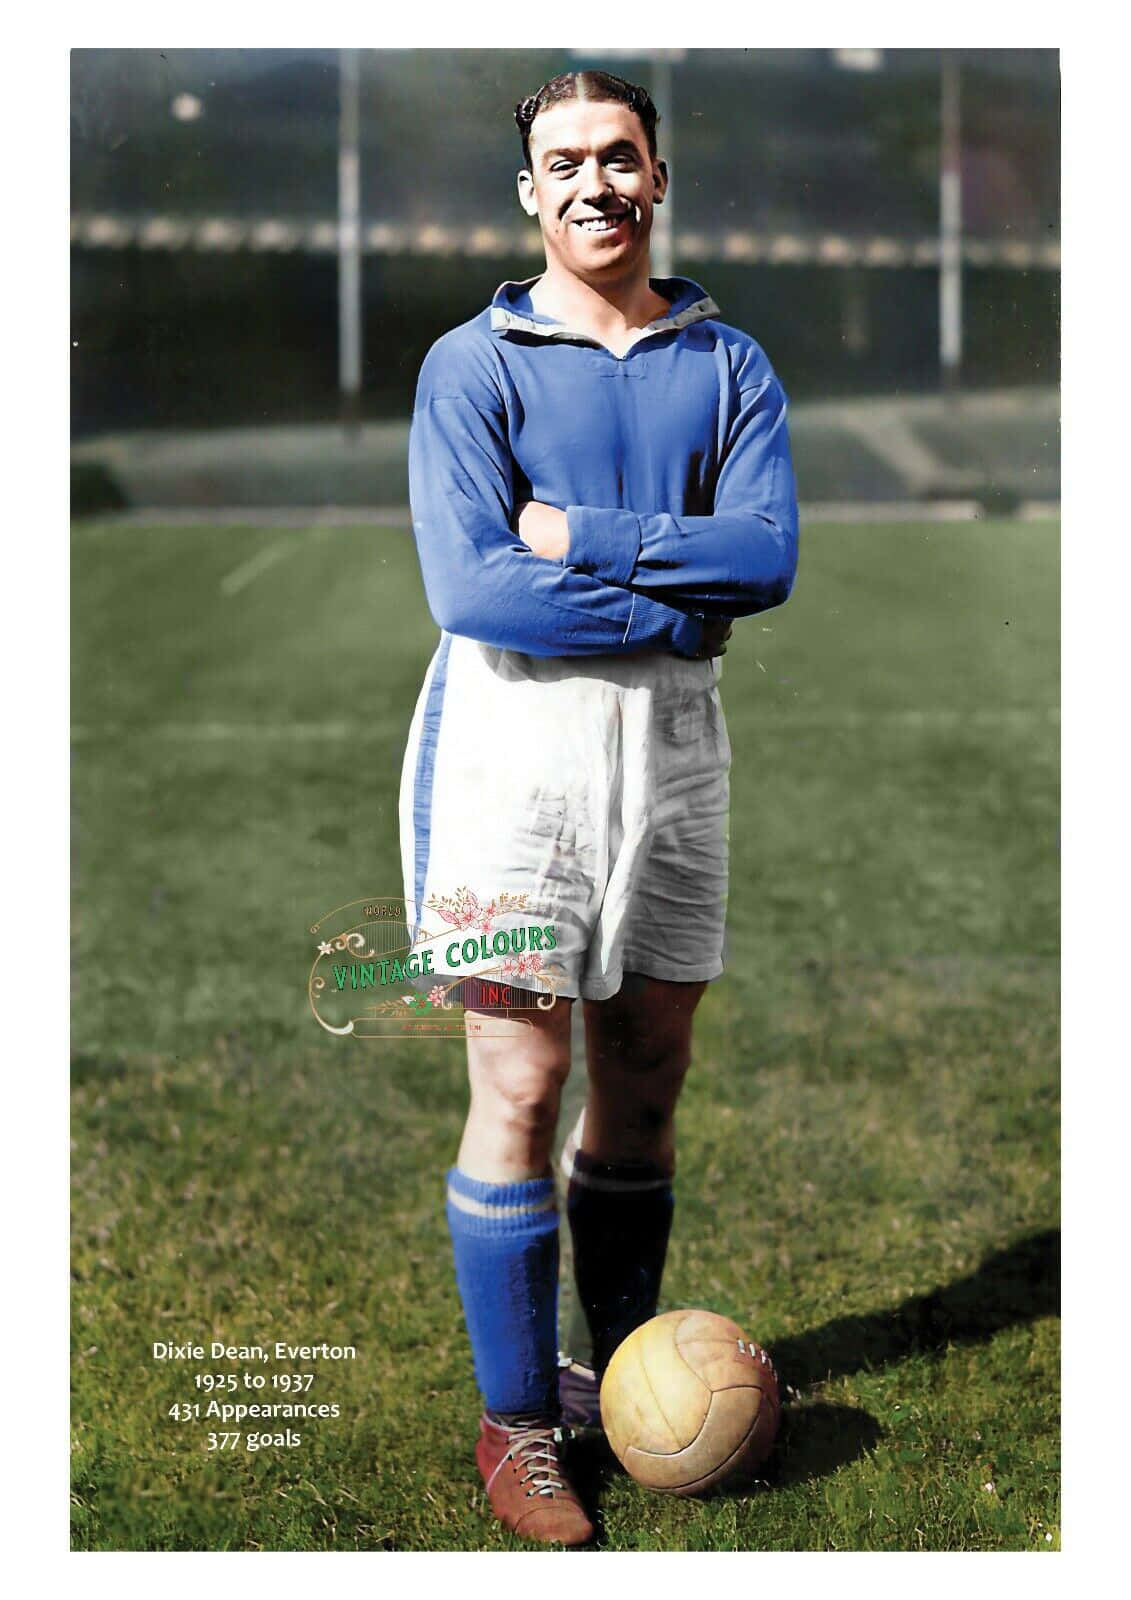 Everton Football-captain Dixie Dean dekorerer denne dristige denimfornøjelse tapet. Wallpaper